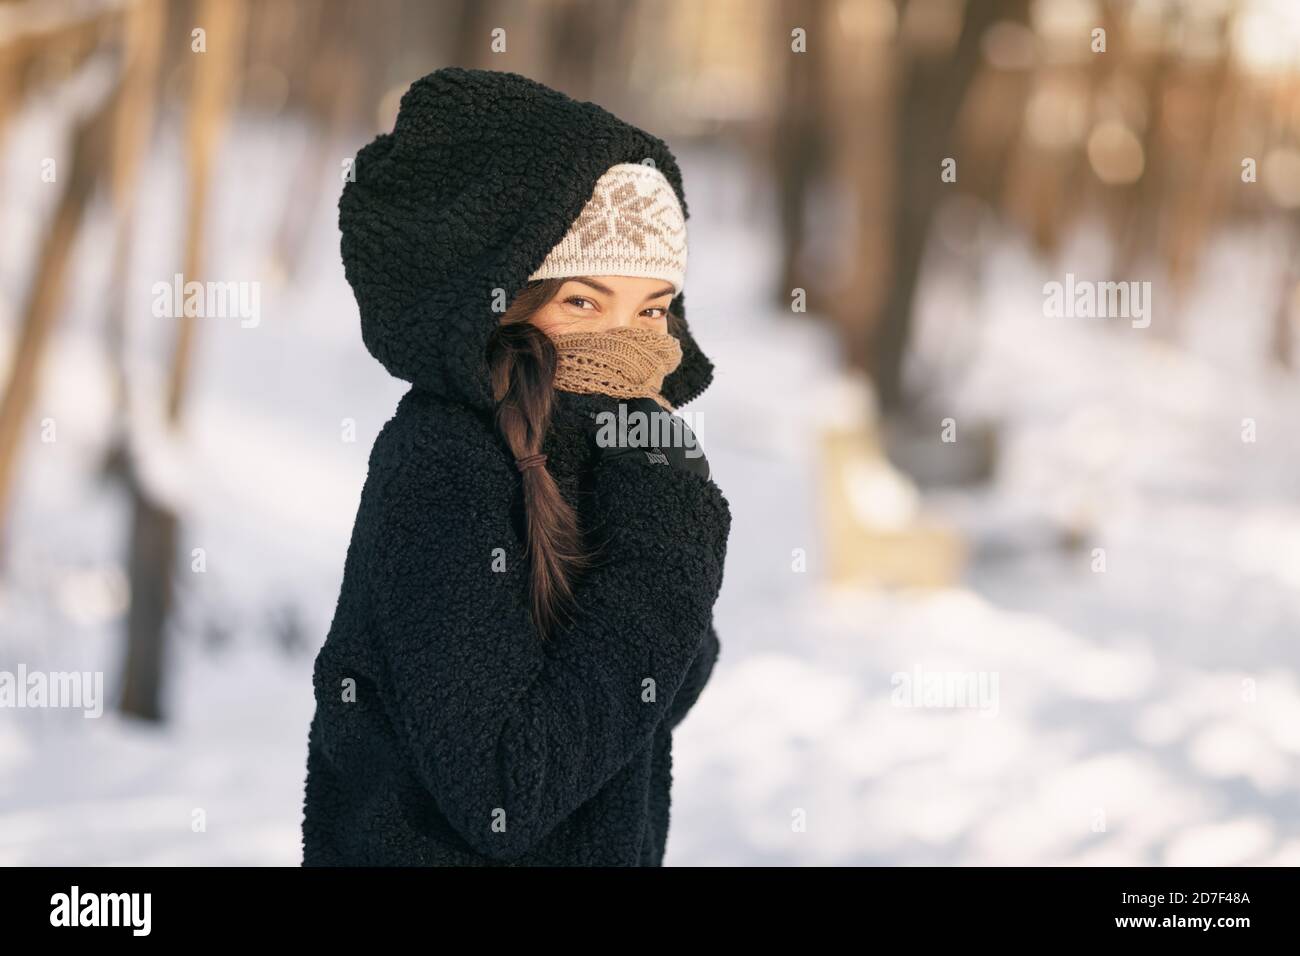 Kalt Winter Schutz asiatische Frau Schutz der Haut über Nase und Mund mit warmen Schal - kaltes Wetter Kleidung Accessoires im Freien Menschen leben Stockfoto